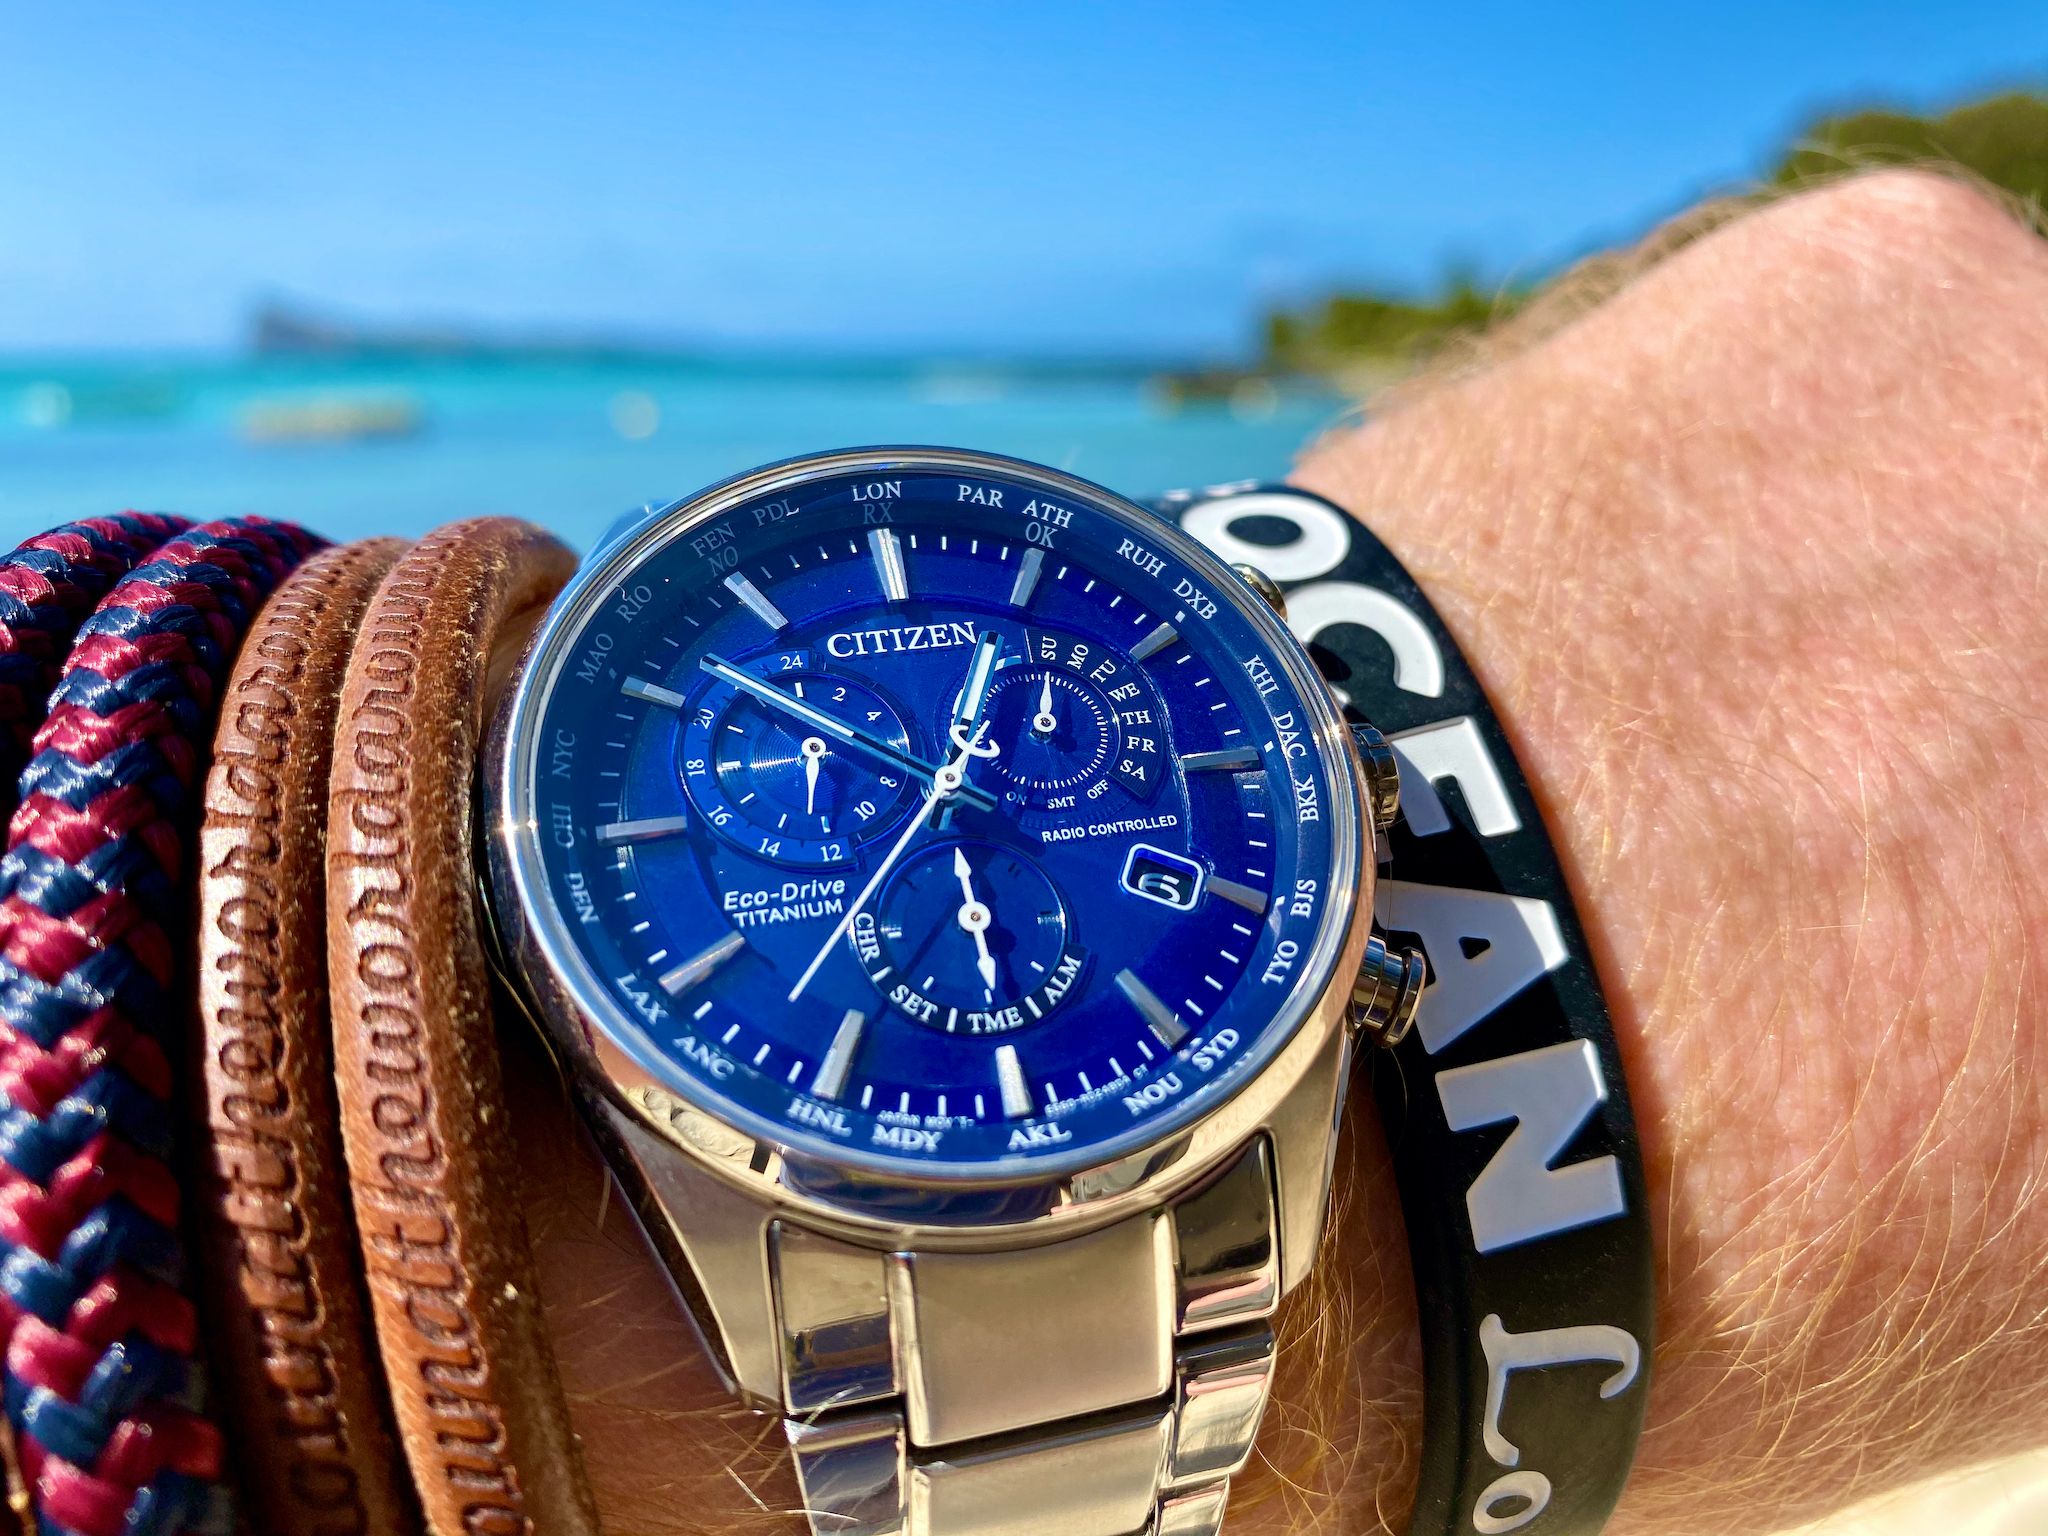 Uhren für die Reise – der perfekte Zeitmesser im Urlaub?